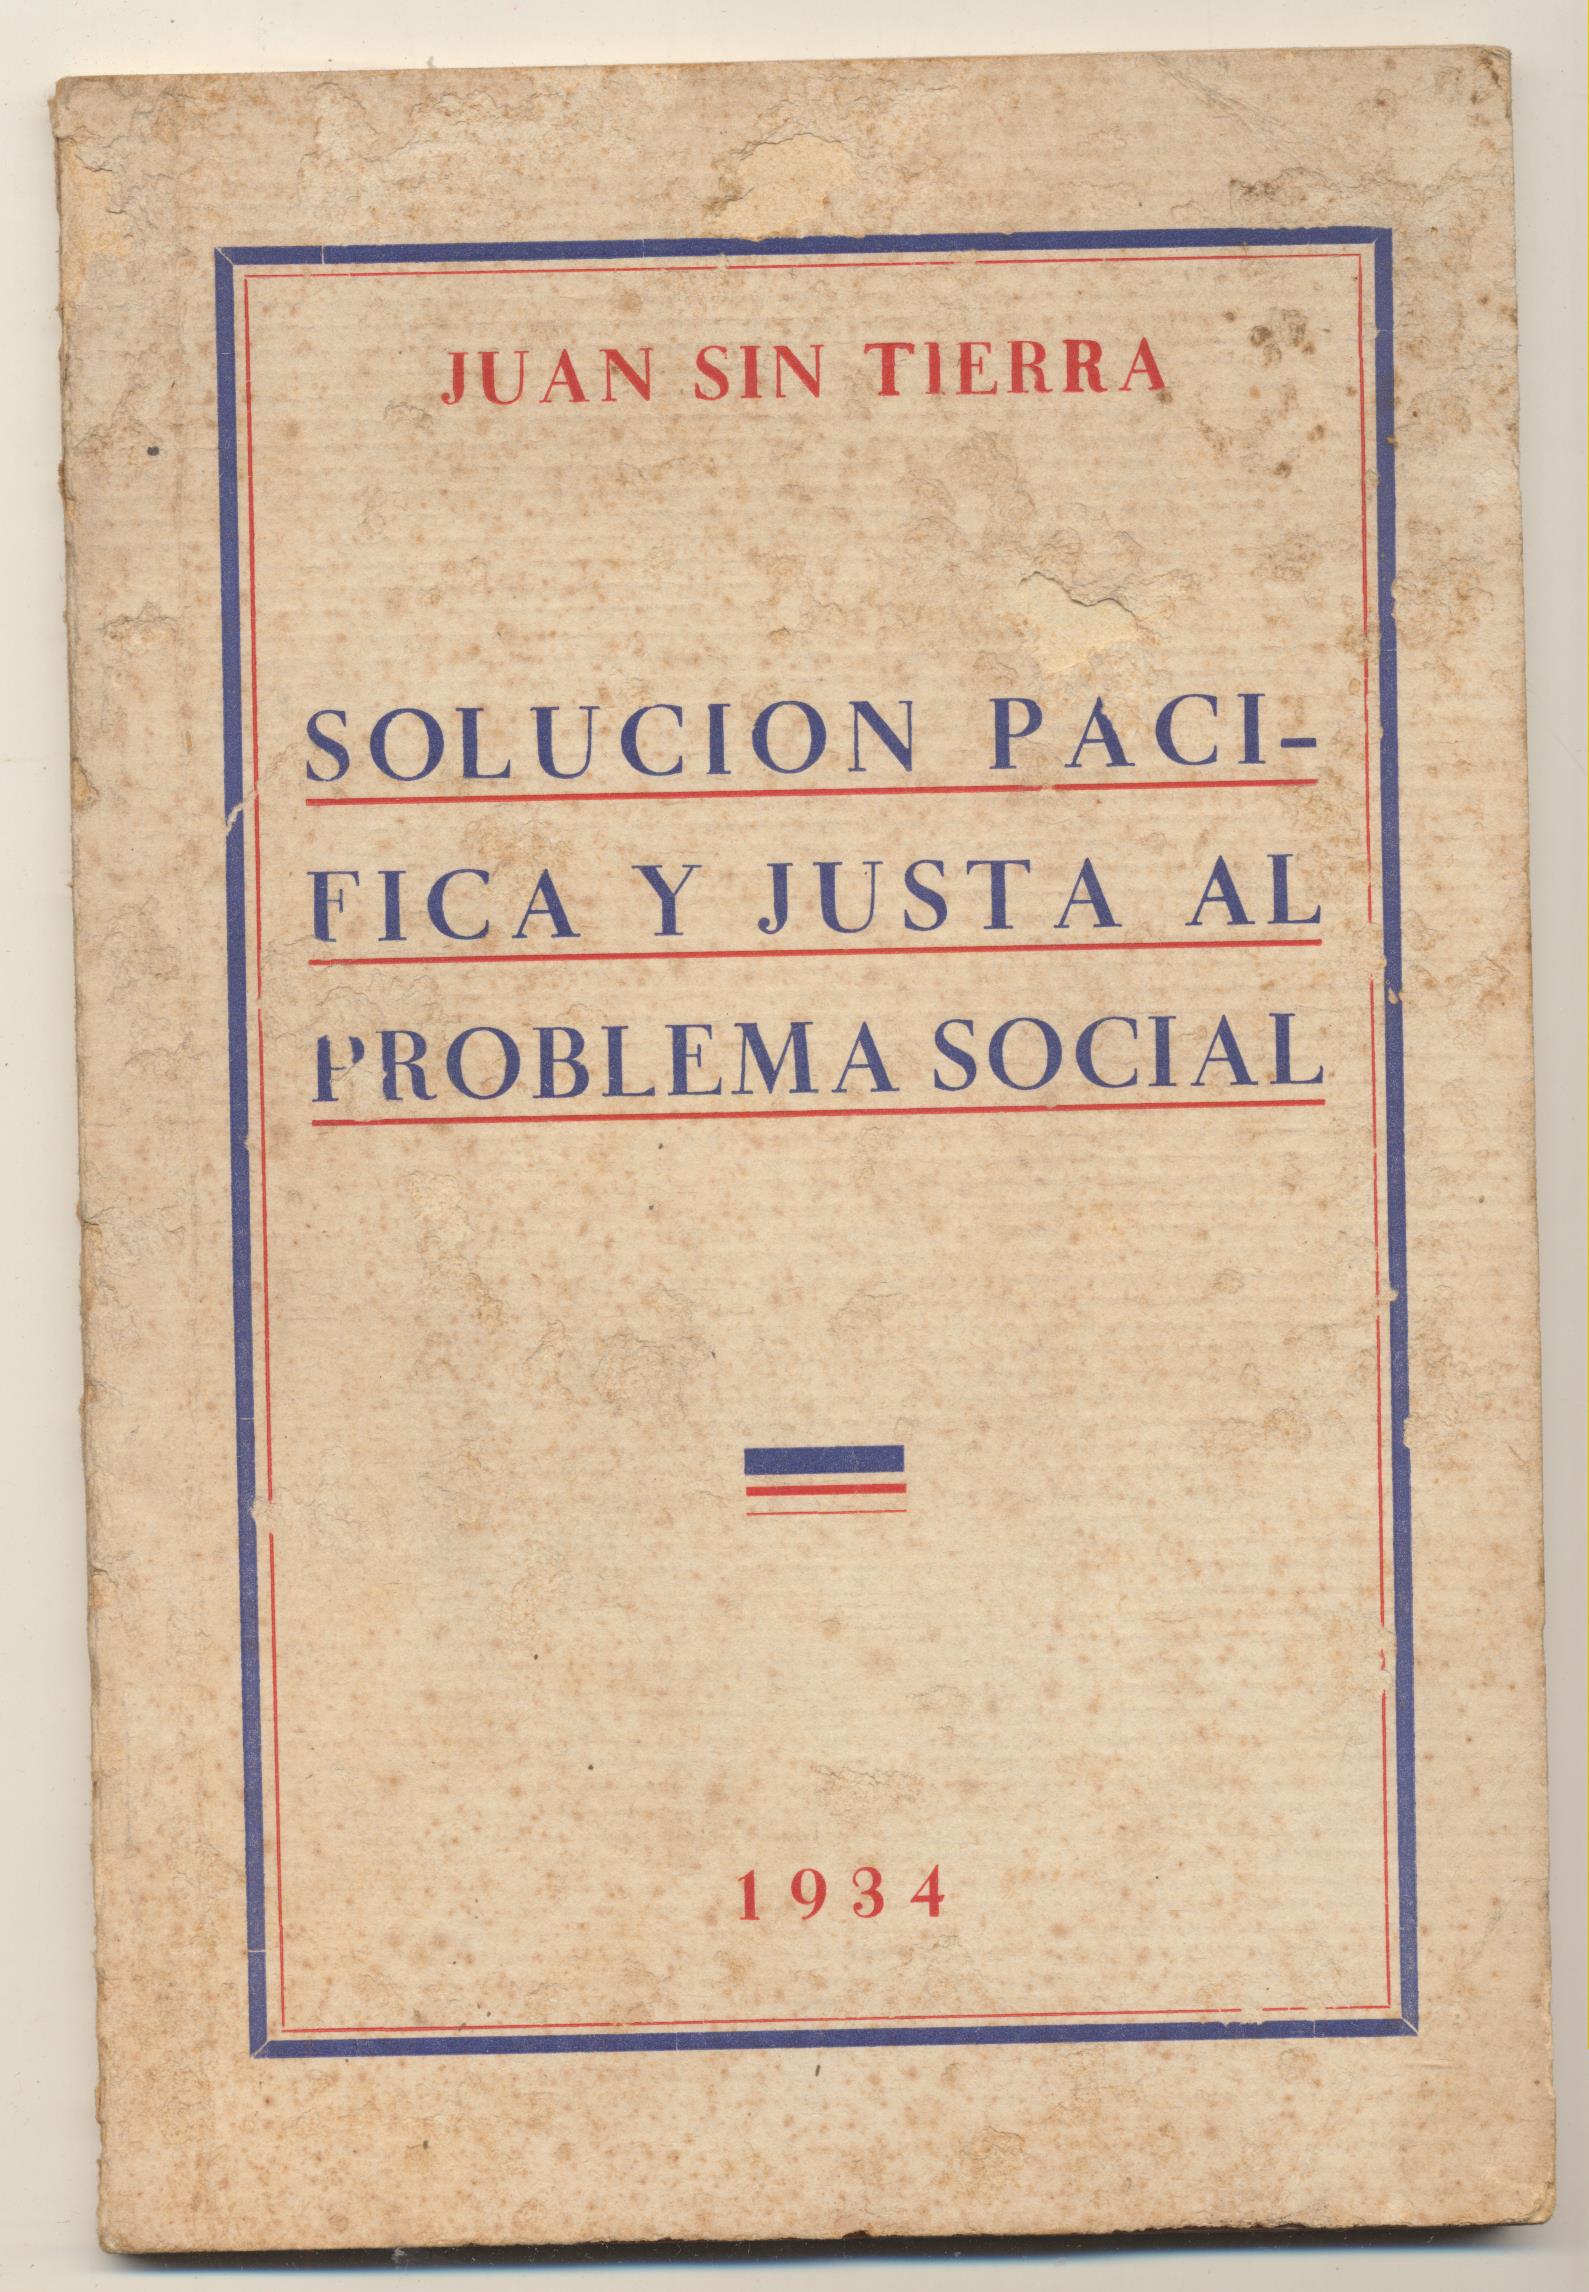 Juan Sin Tierra. Solución Pacífica y Justa al Problema social. Madrid 1934. Dedicado y firmado por el Autor